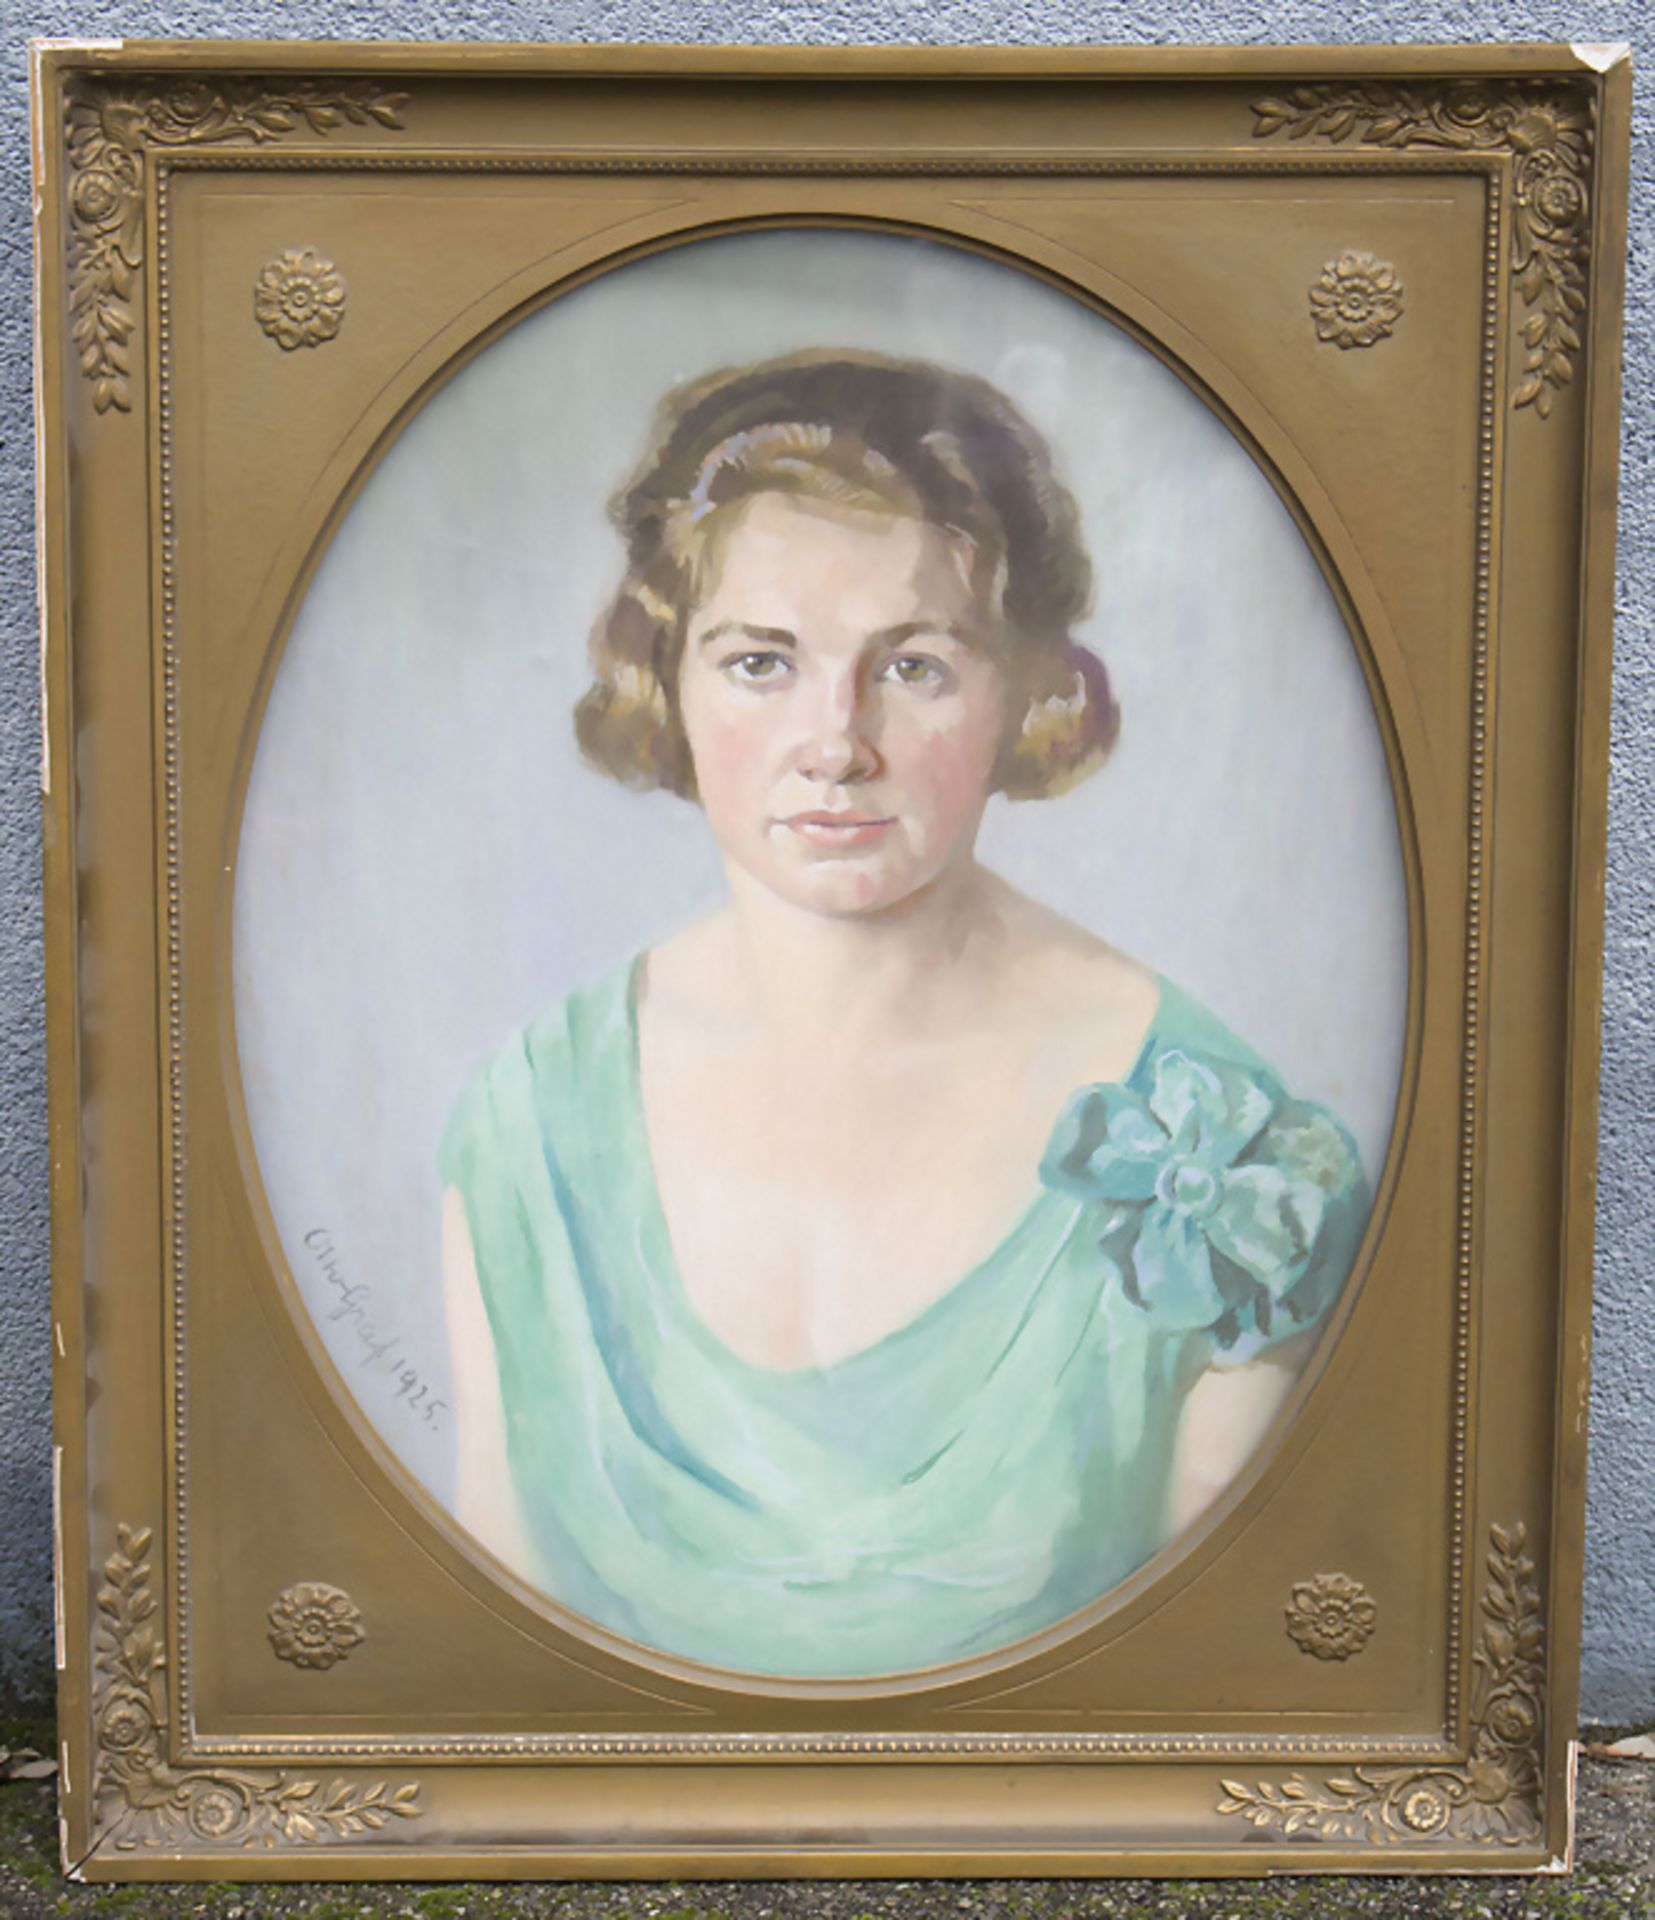 Otto GRAF (1882-1950), Damenporträt / A portrait of a lady, 1925 - Image 2 of 5